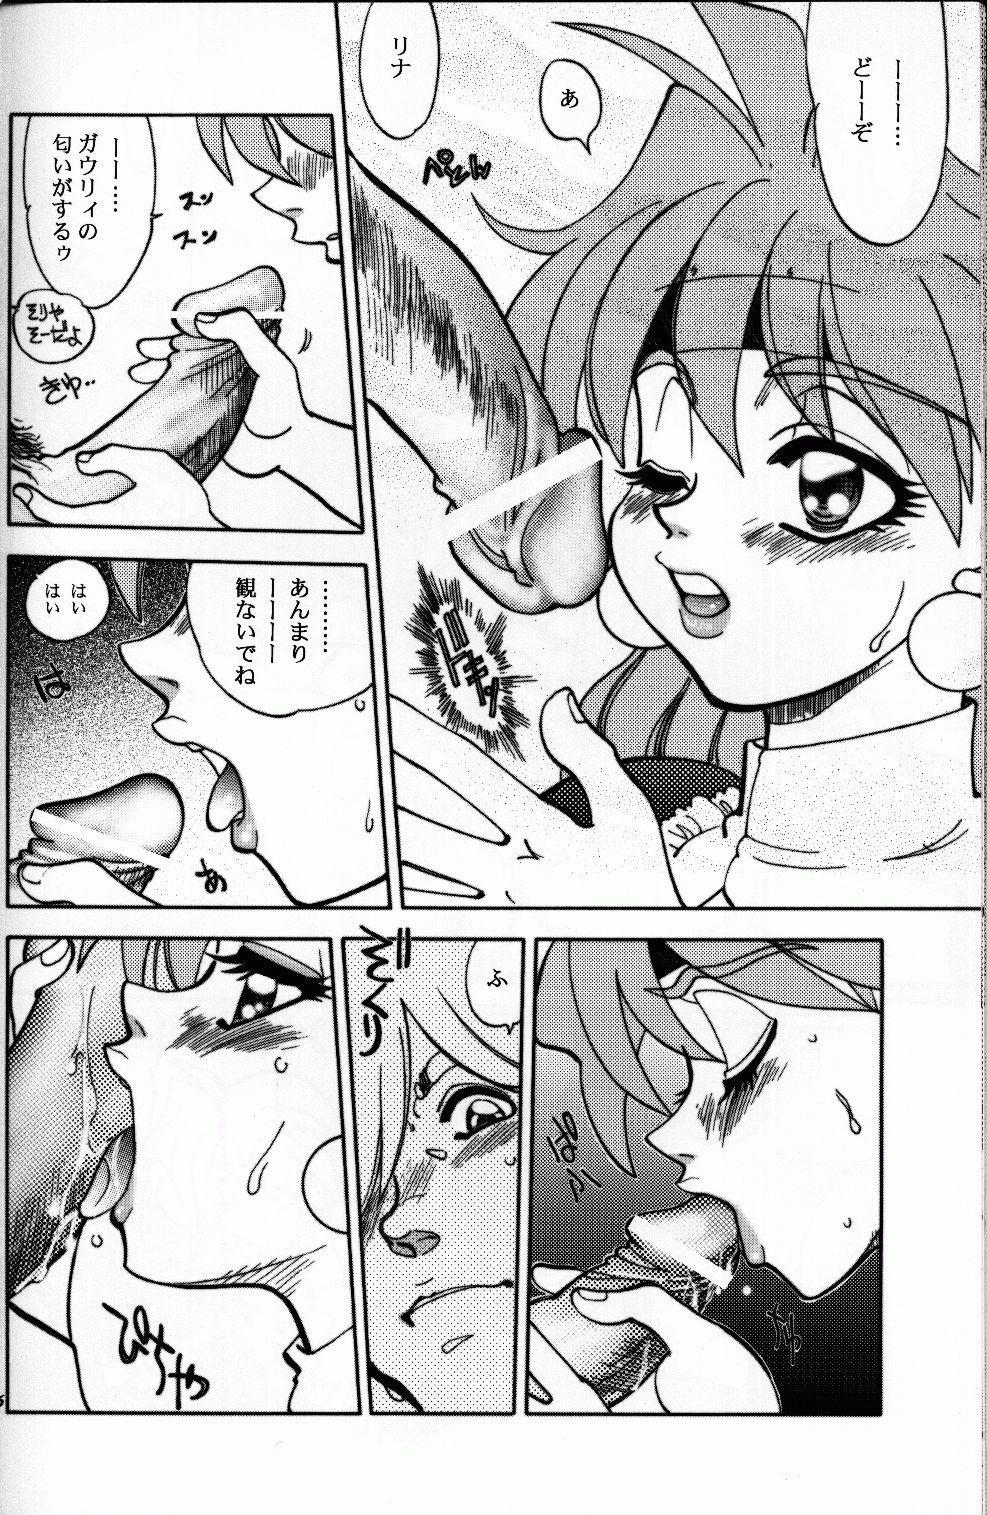 Mantou 22 hentai manga picture 24